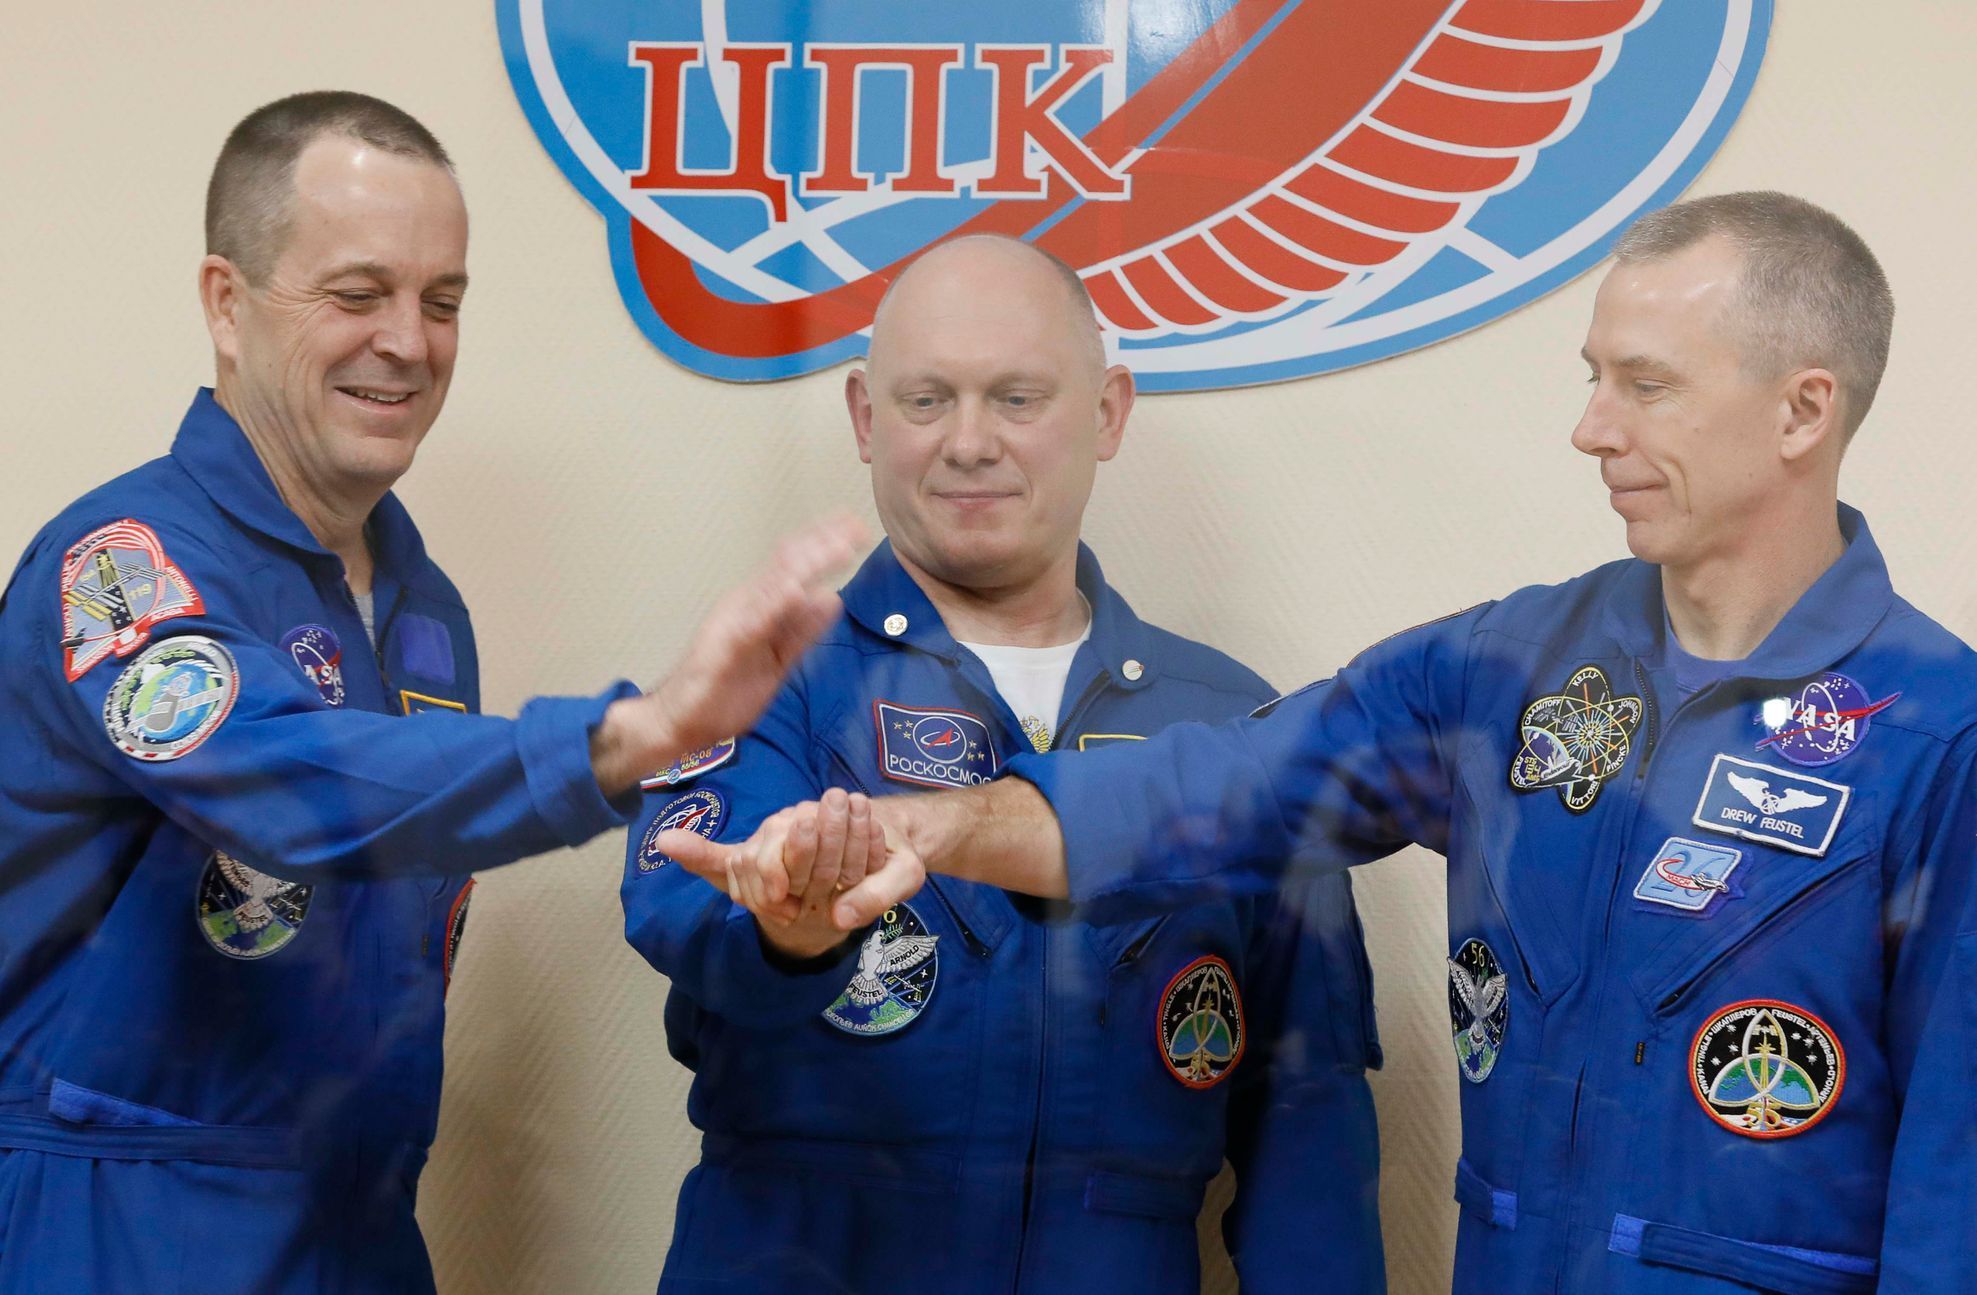 Feustel - Bajkonur - ISS